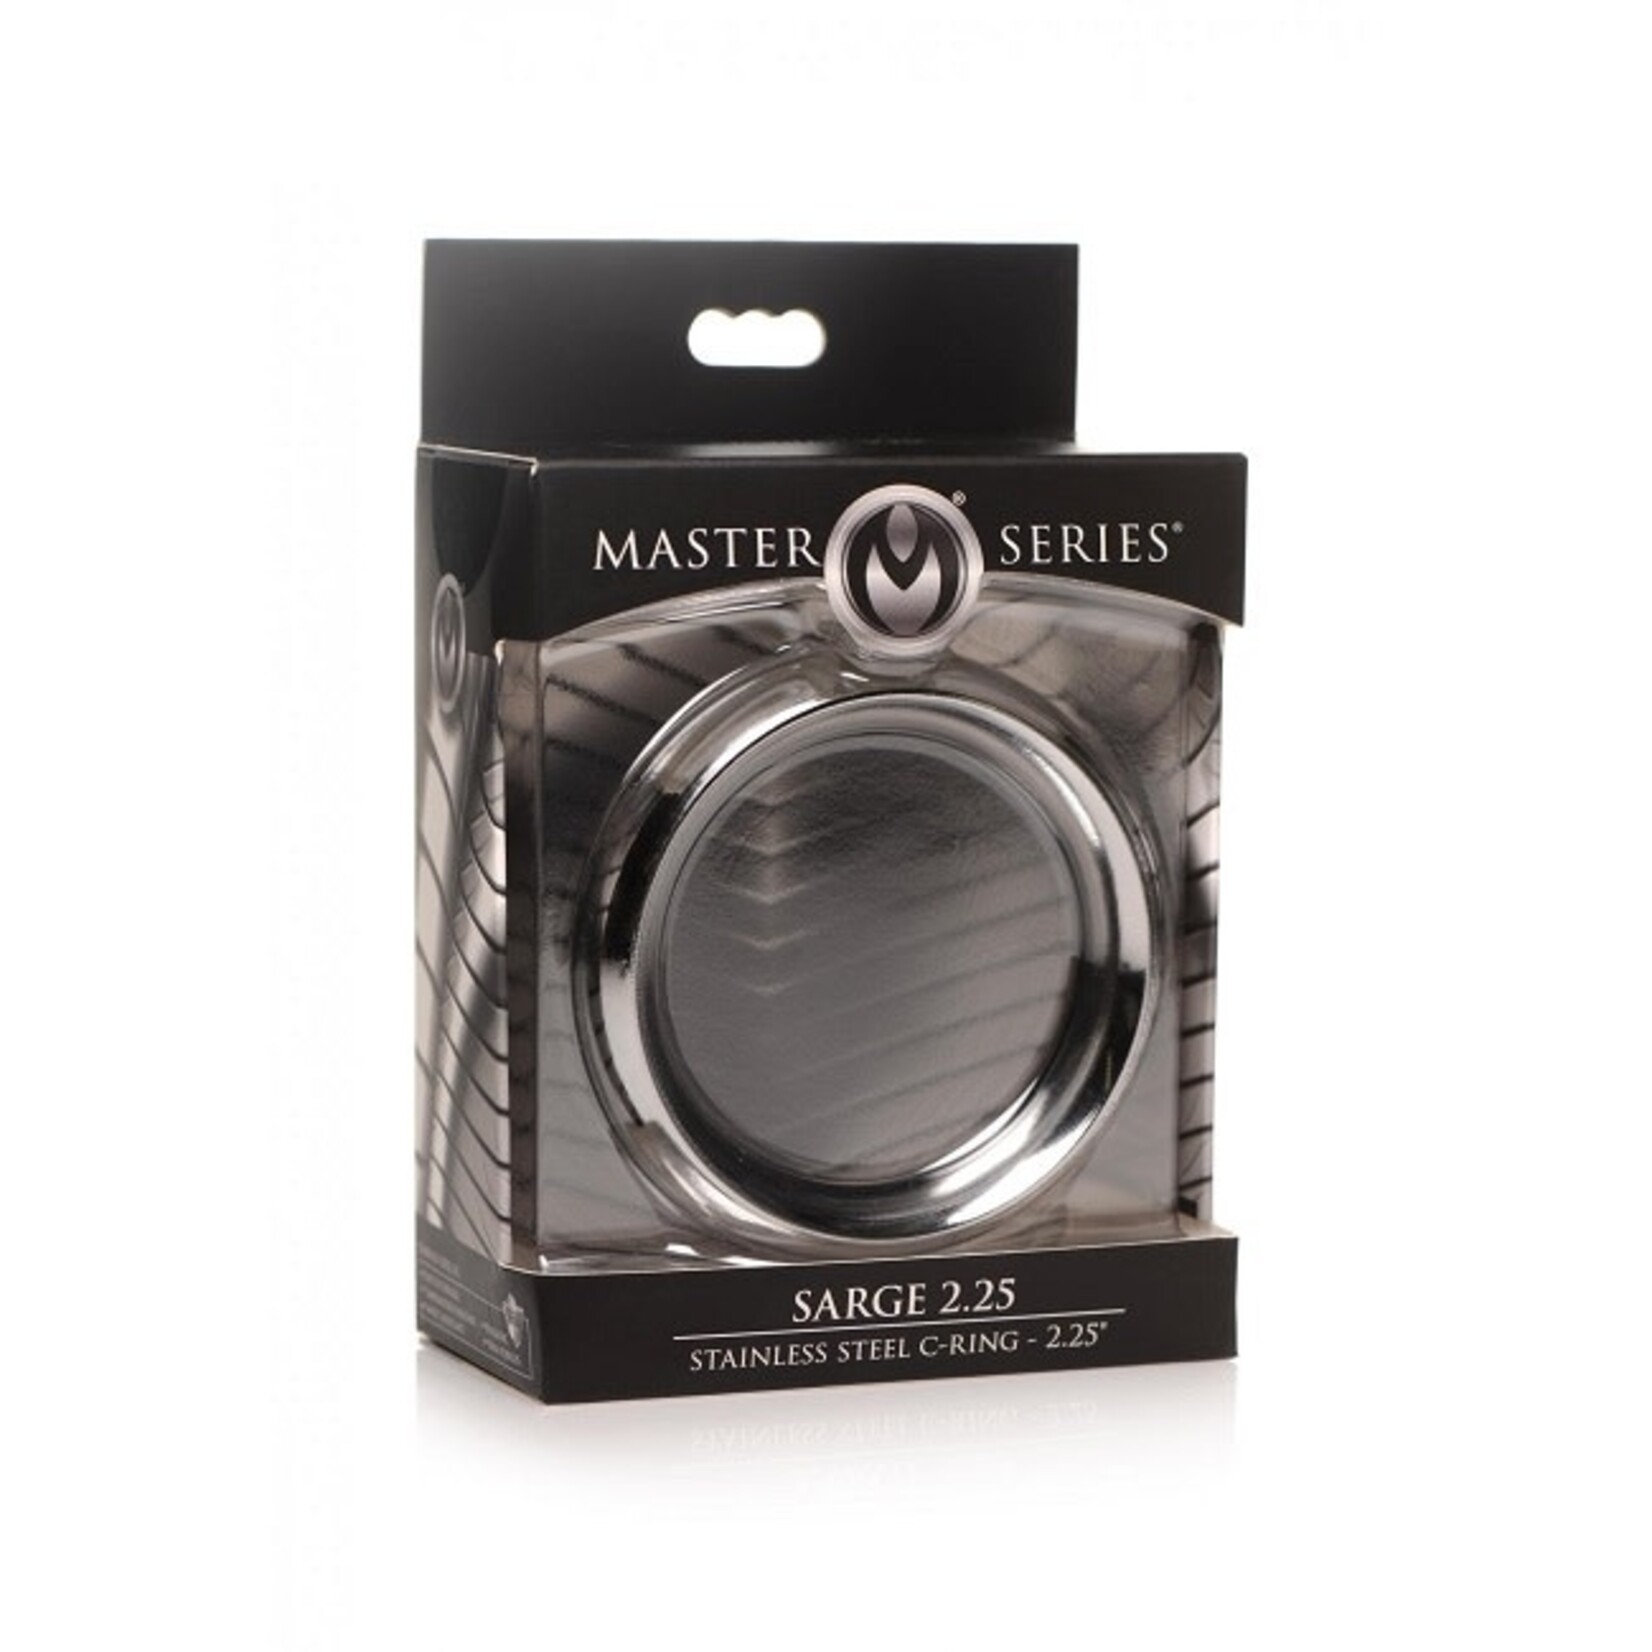 Master Series Master Series Sarge Stainless Steel C-Ring 2.25"